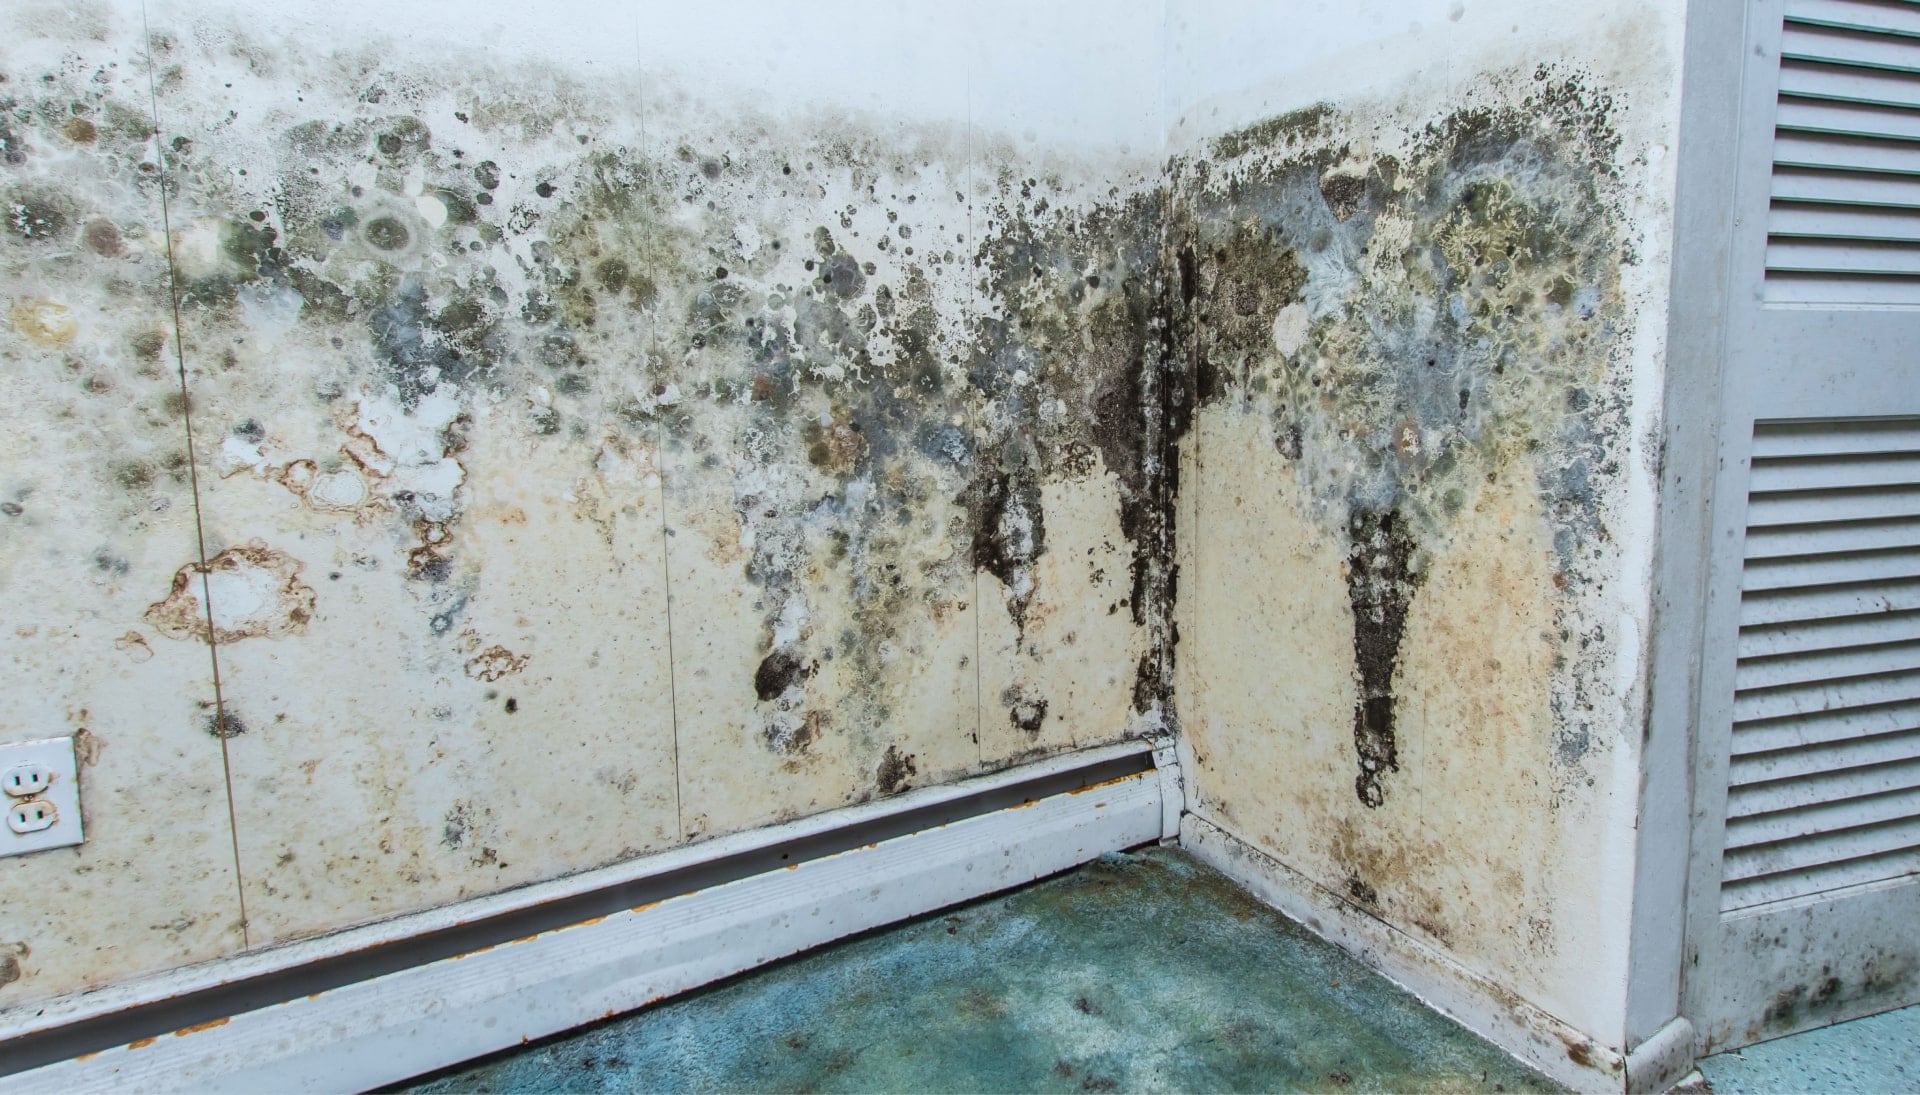 Mold-Damager-Odor-Control in Escondido